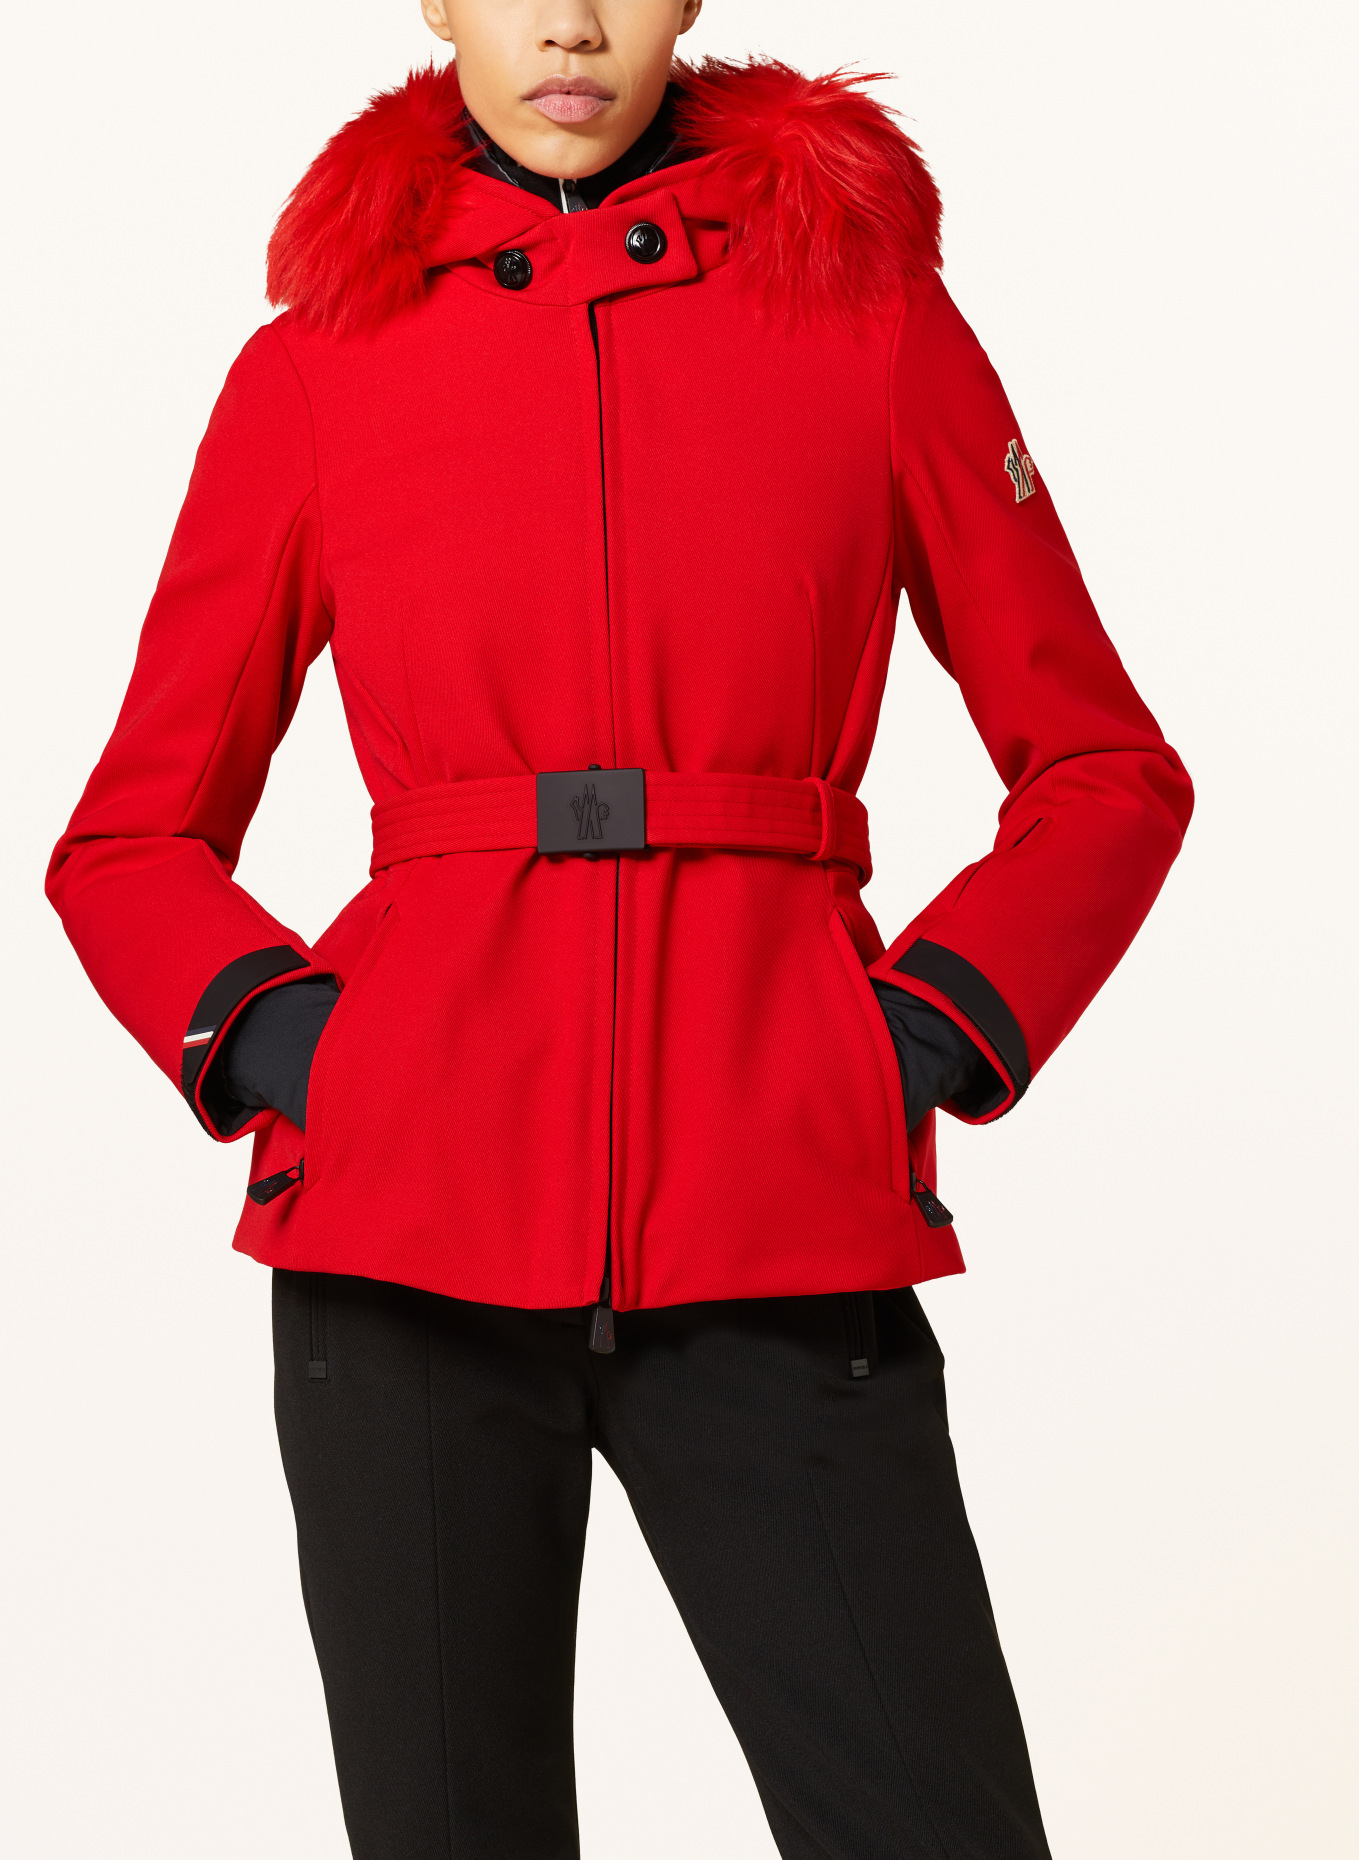 MONCLER GRENOBLE Ski jacket, Color: RED (Image 7)